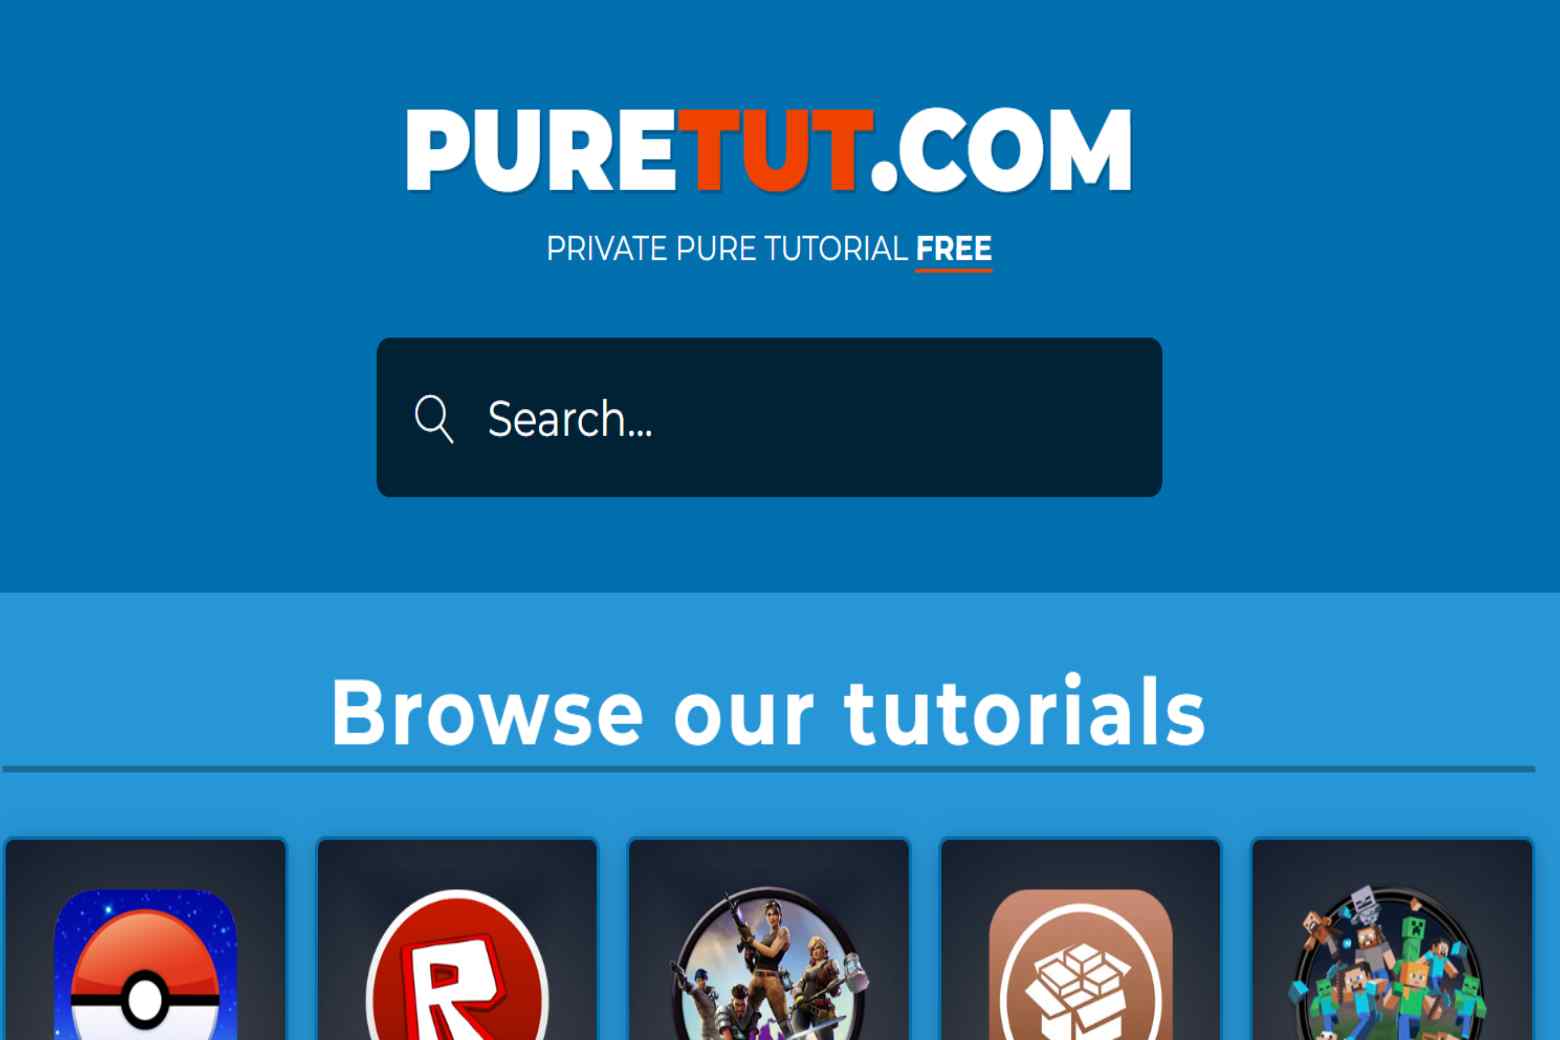 Puretut.com